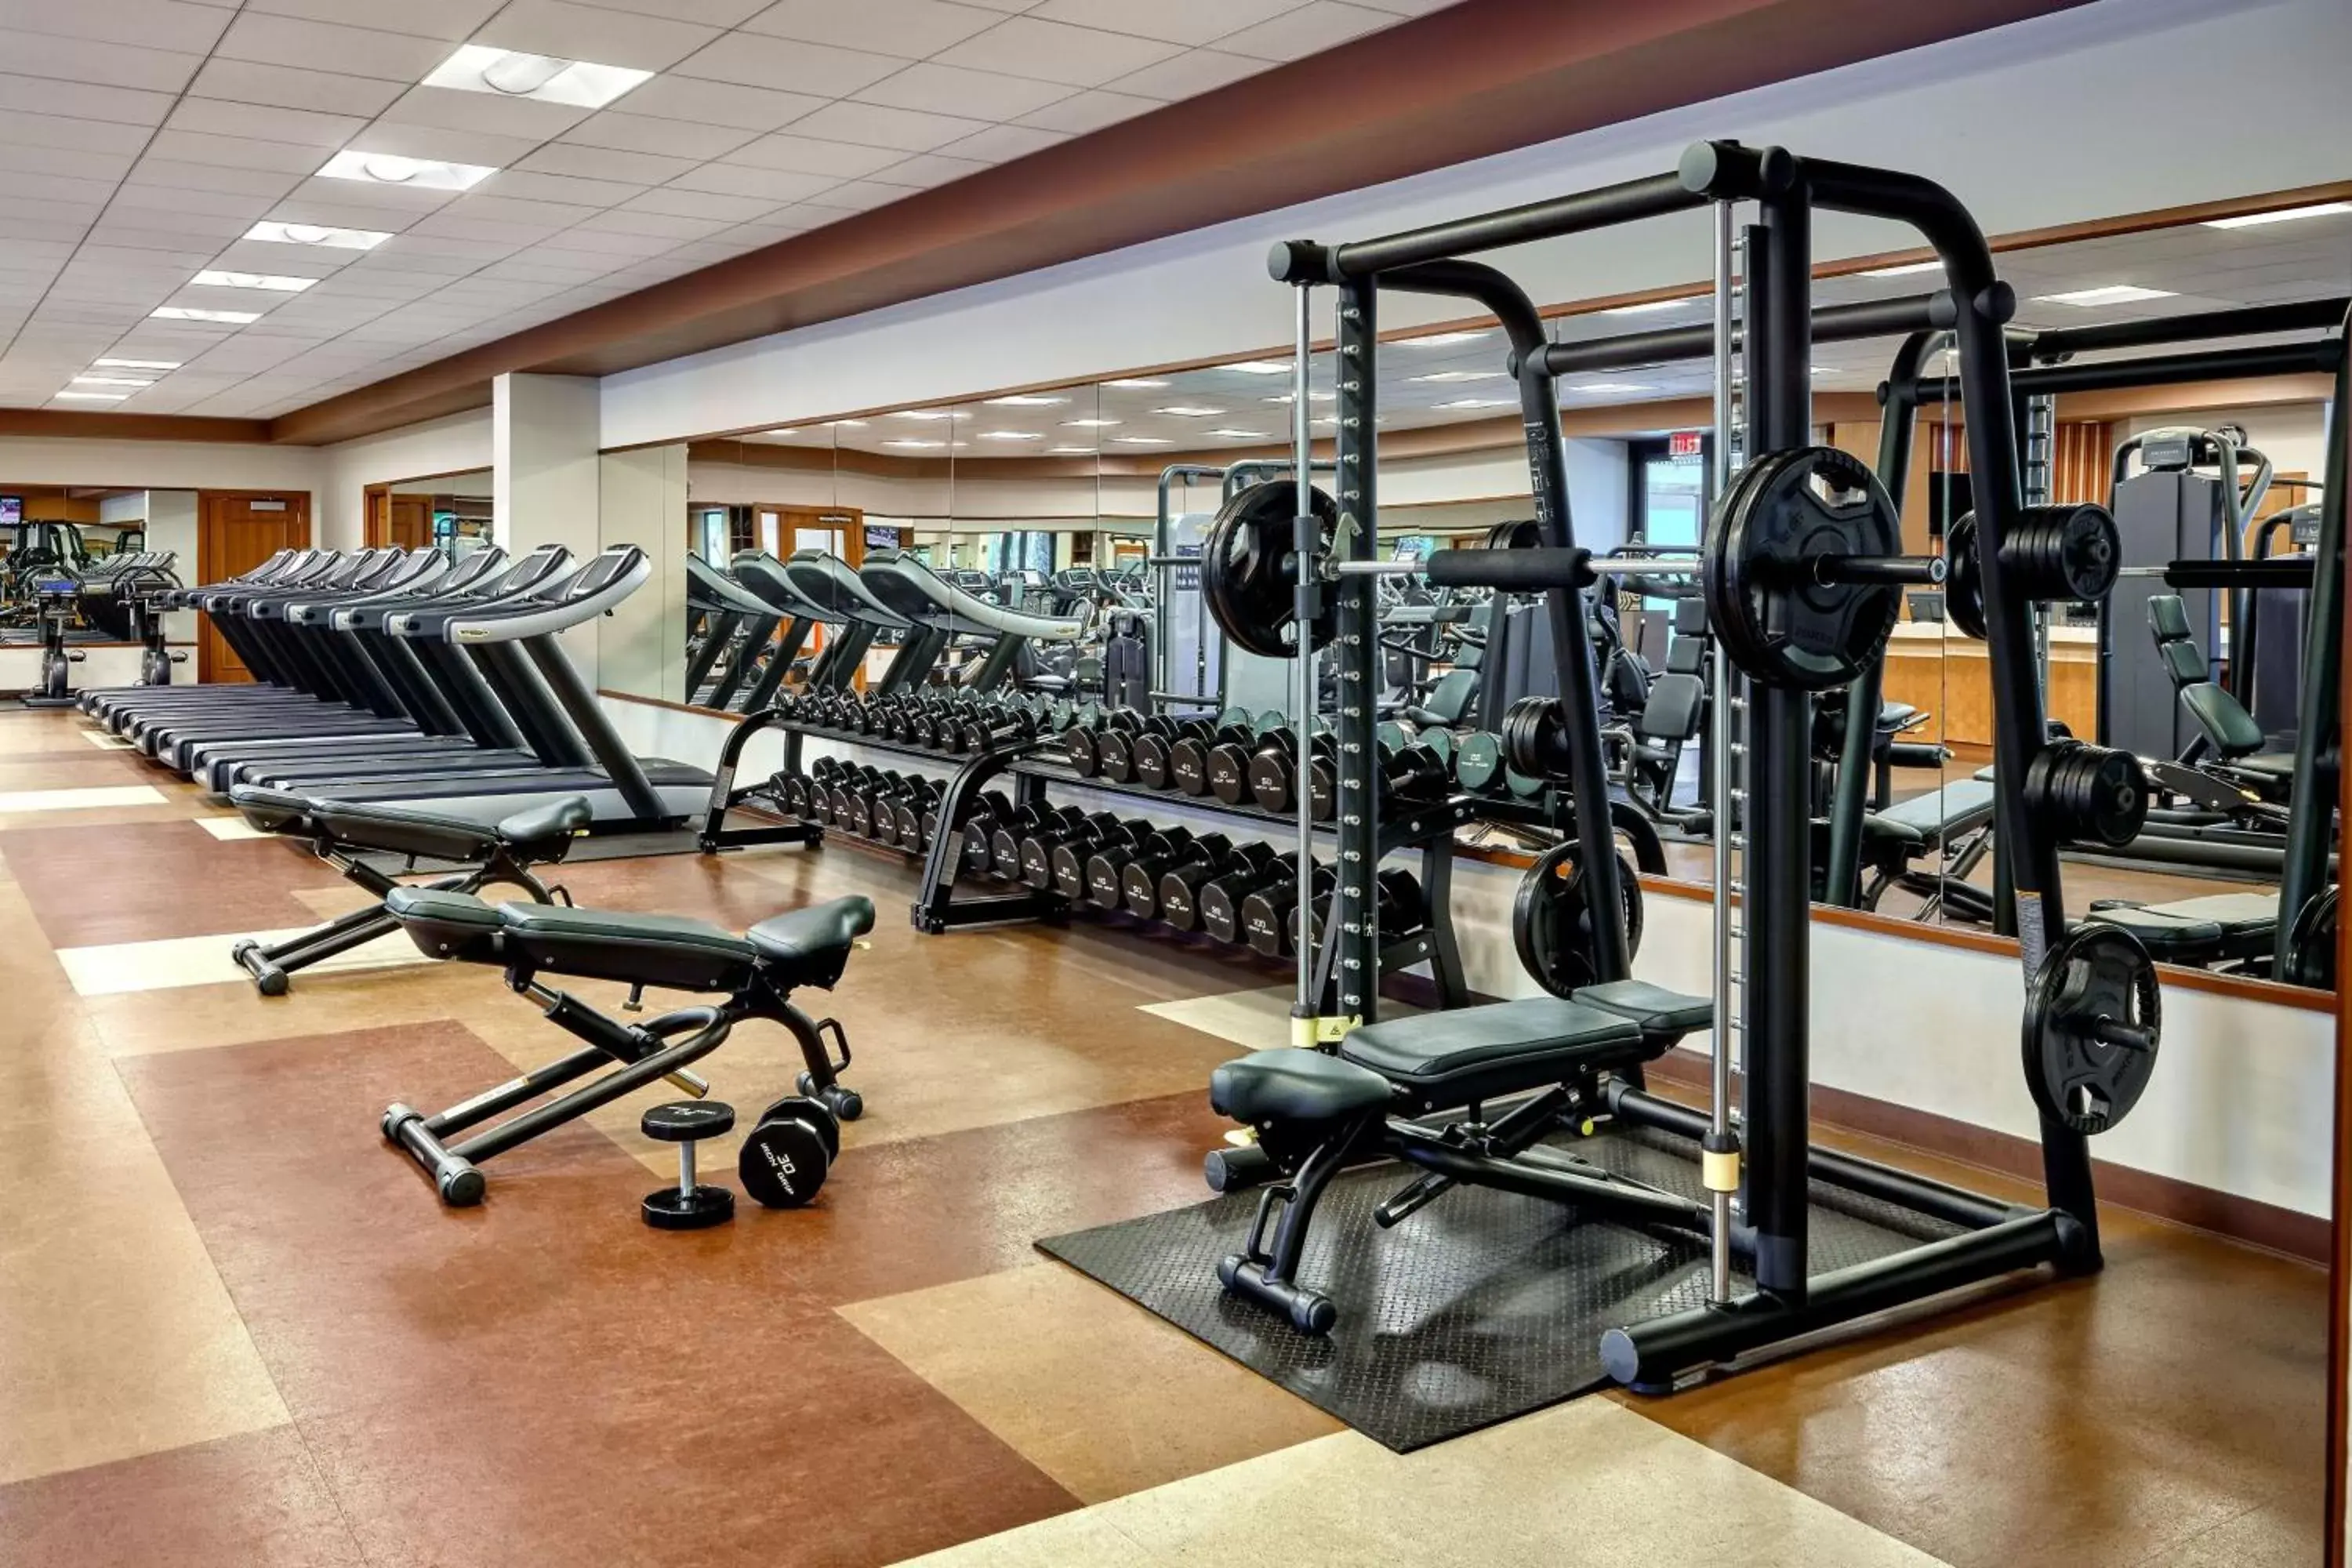 Fitness centre/facilities, Fitness Center/Facilities in JW Marriott Desert Springs Resort & Spa